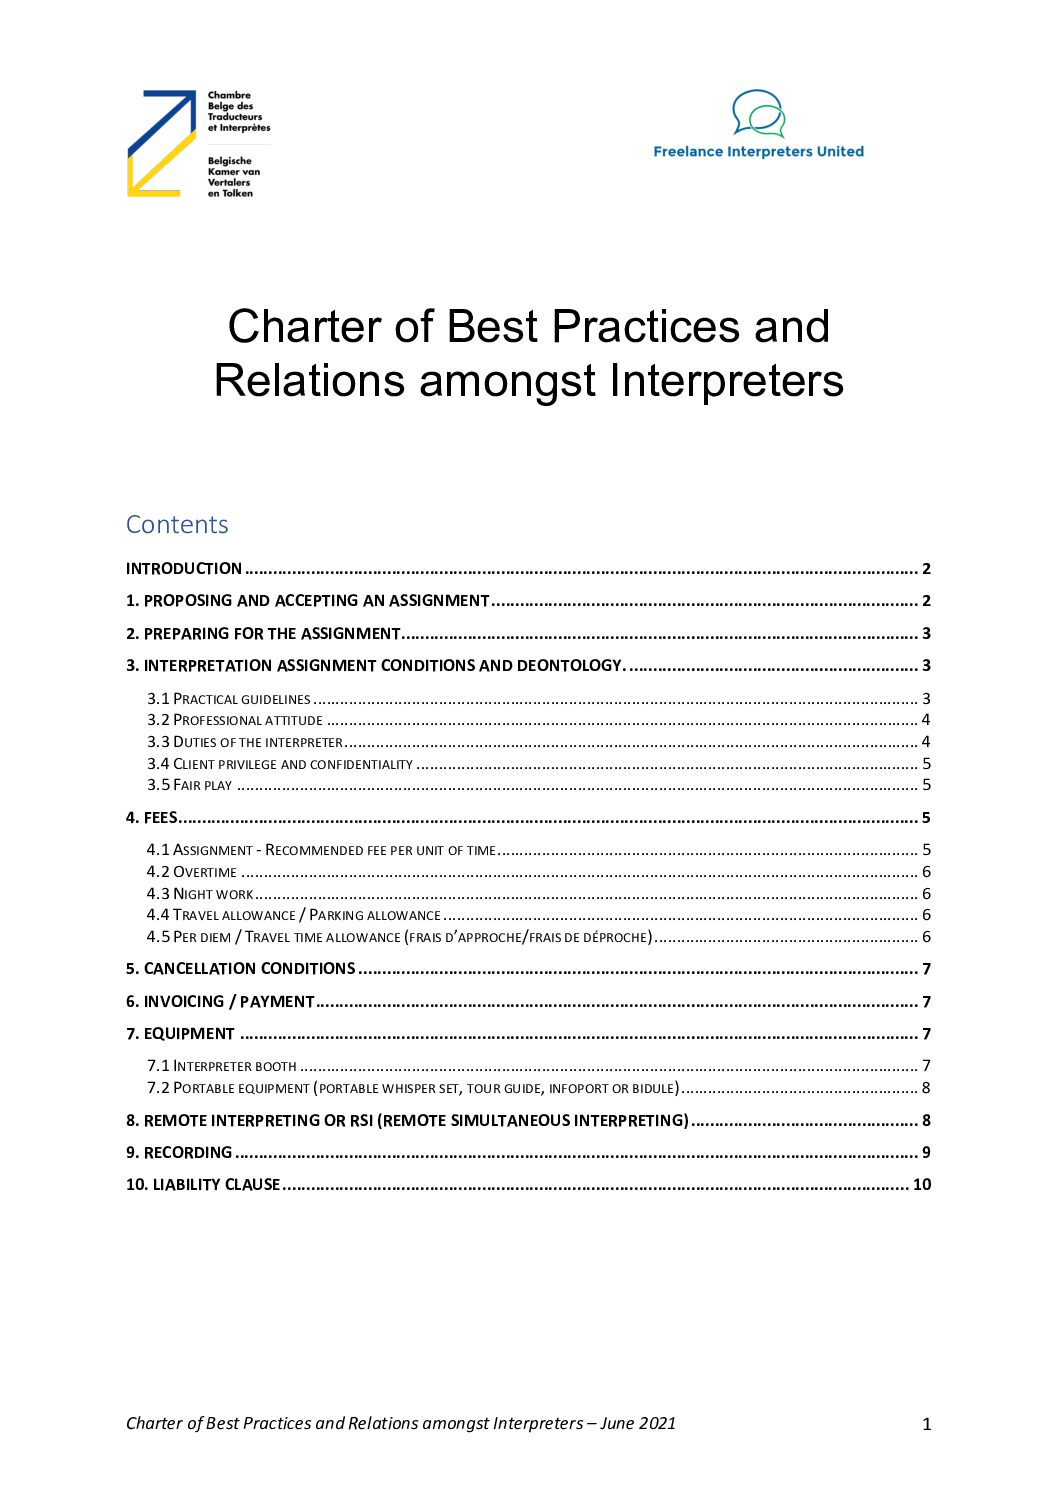 Image de présentation pour le document : Interpreters – Charter of best practices and relations amongst colleagues